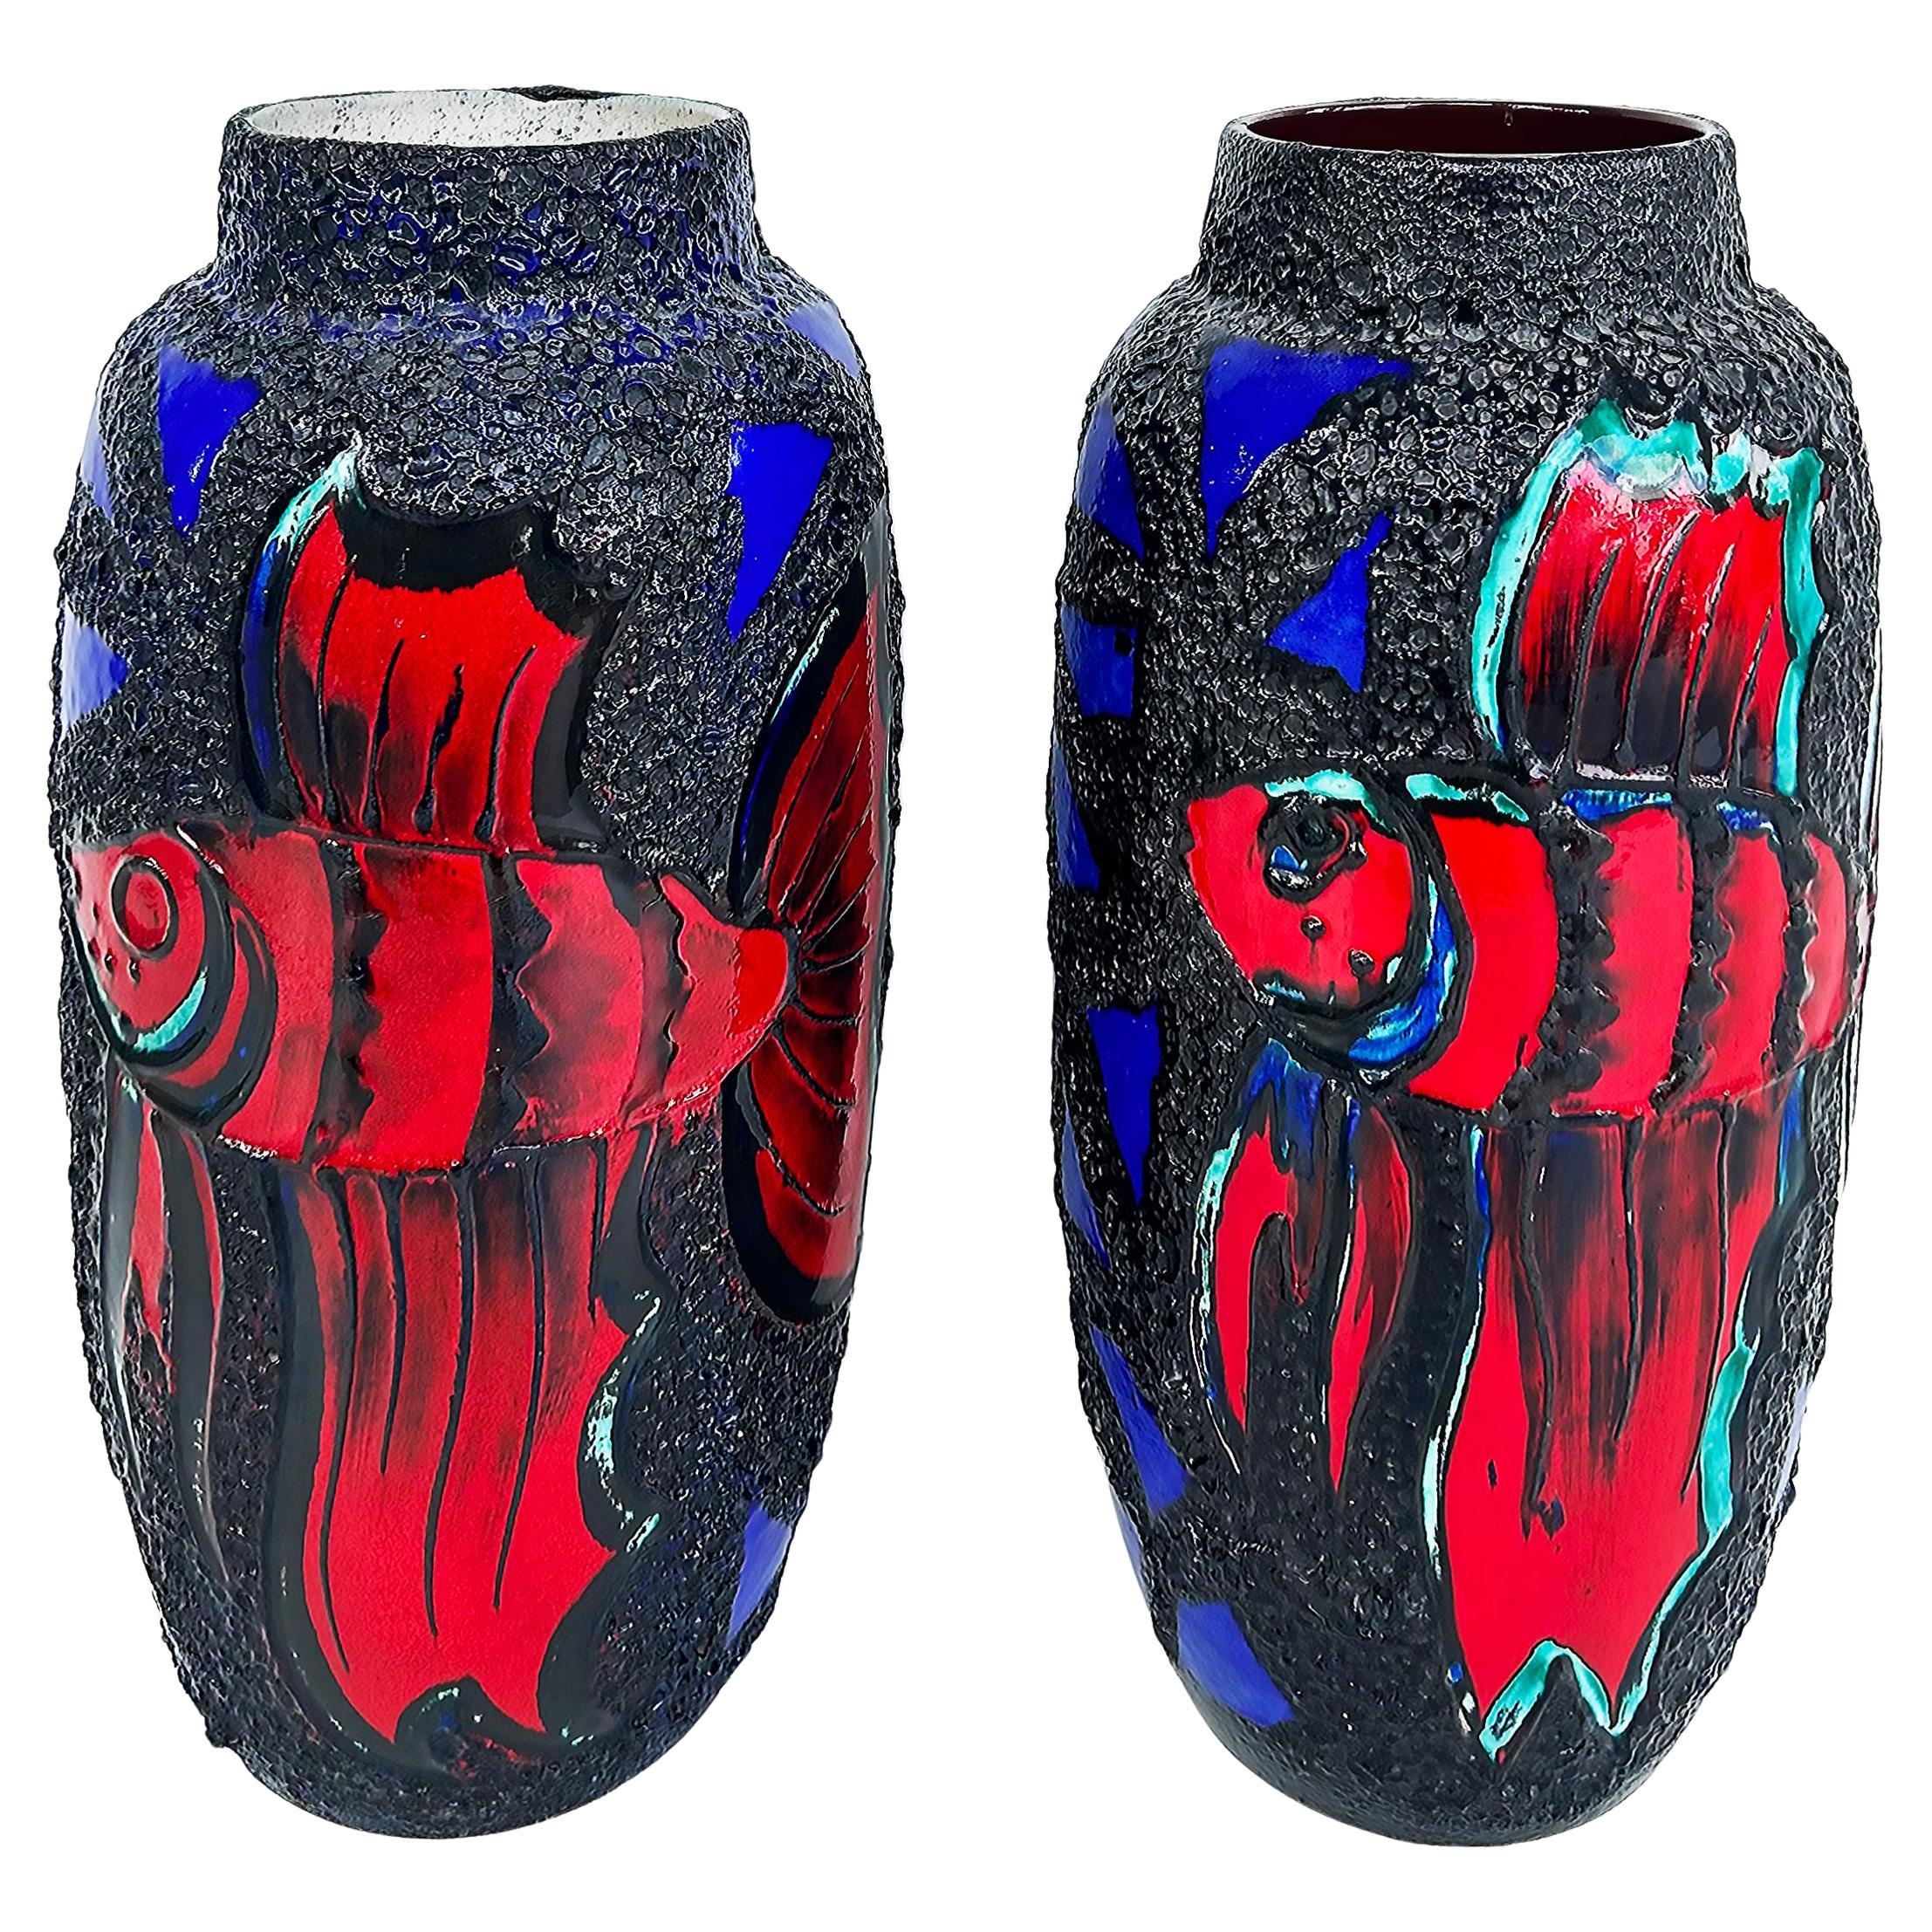 Monumentaux vases à poissons en céramique de l'Allemagne de l'Ouest émaillés de lave, colorés en vente